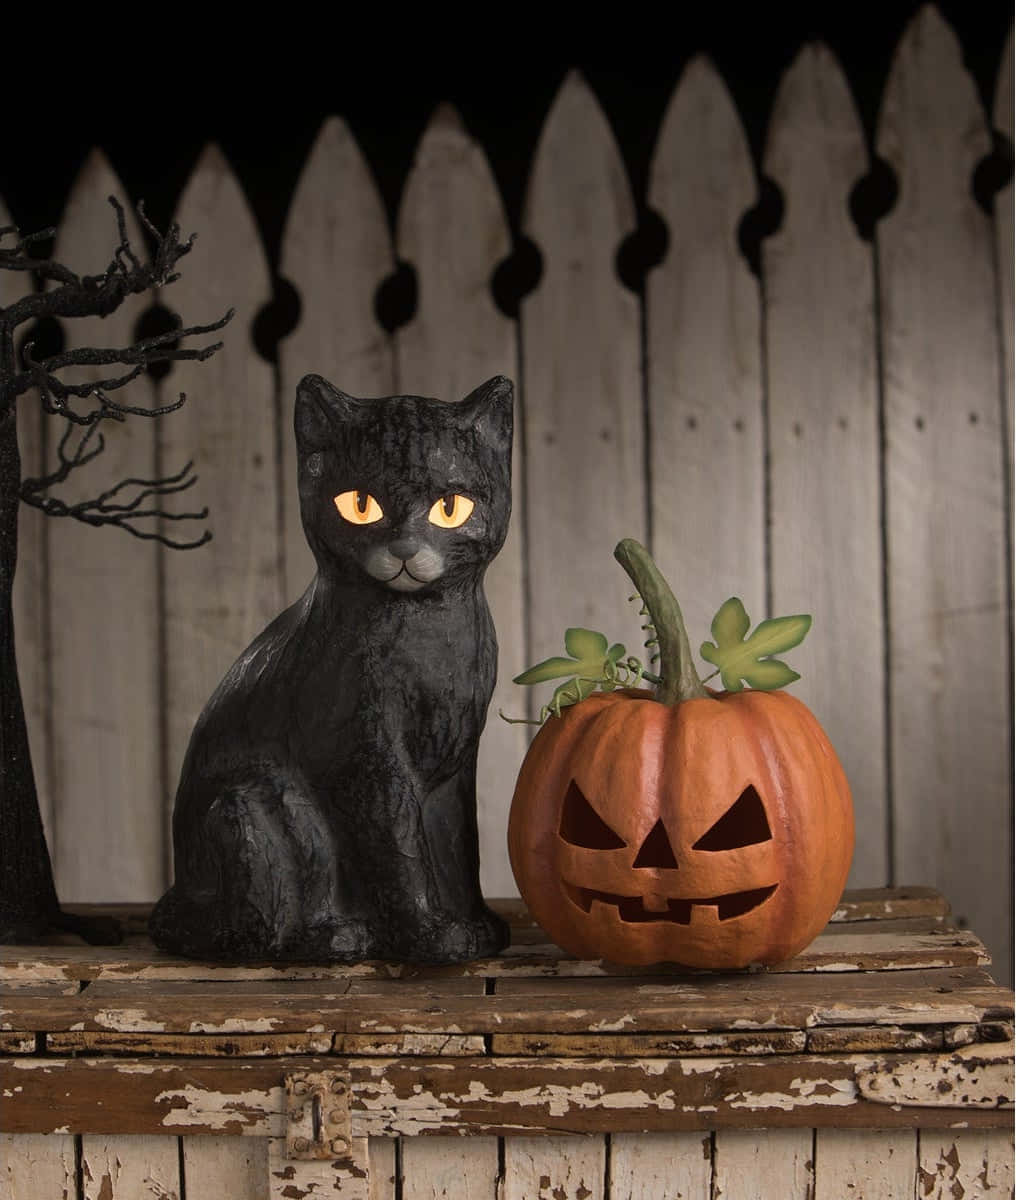 Enuhyggelig Halloween Kat Klar Til At Forhekse. Wallpaper